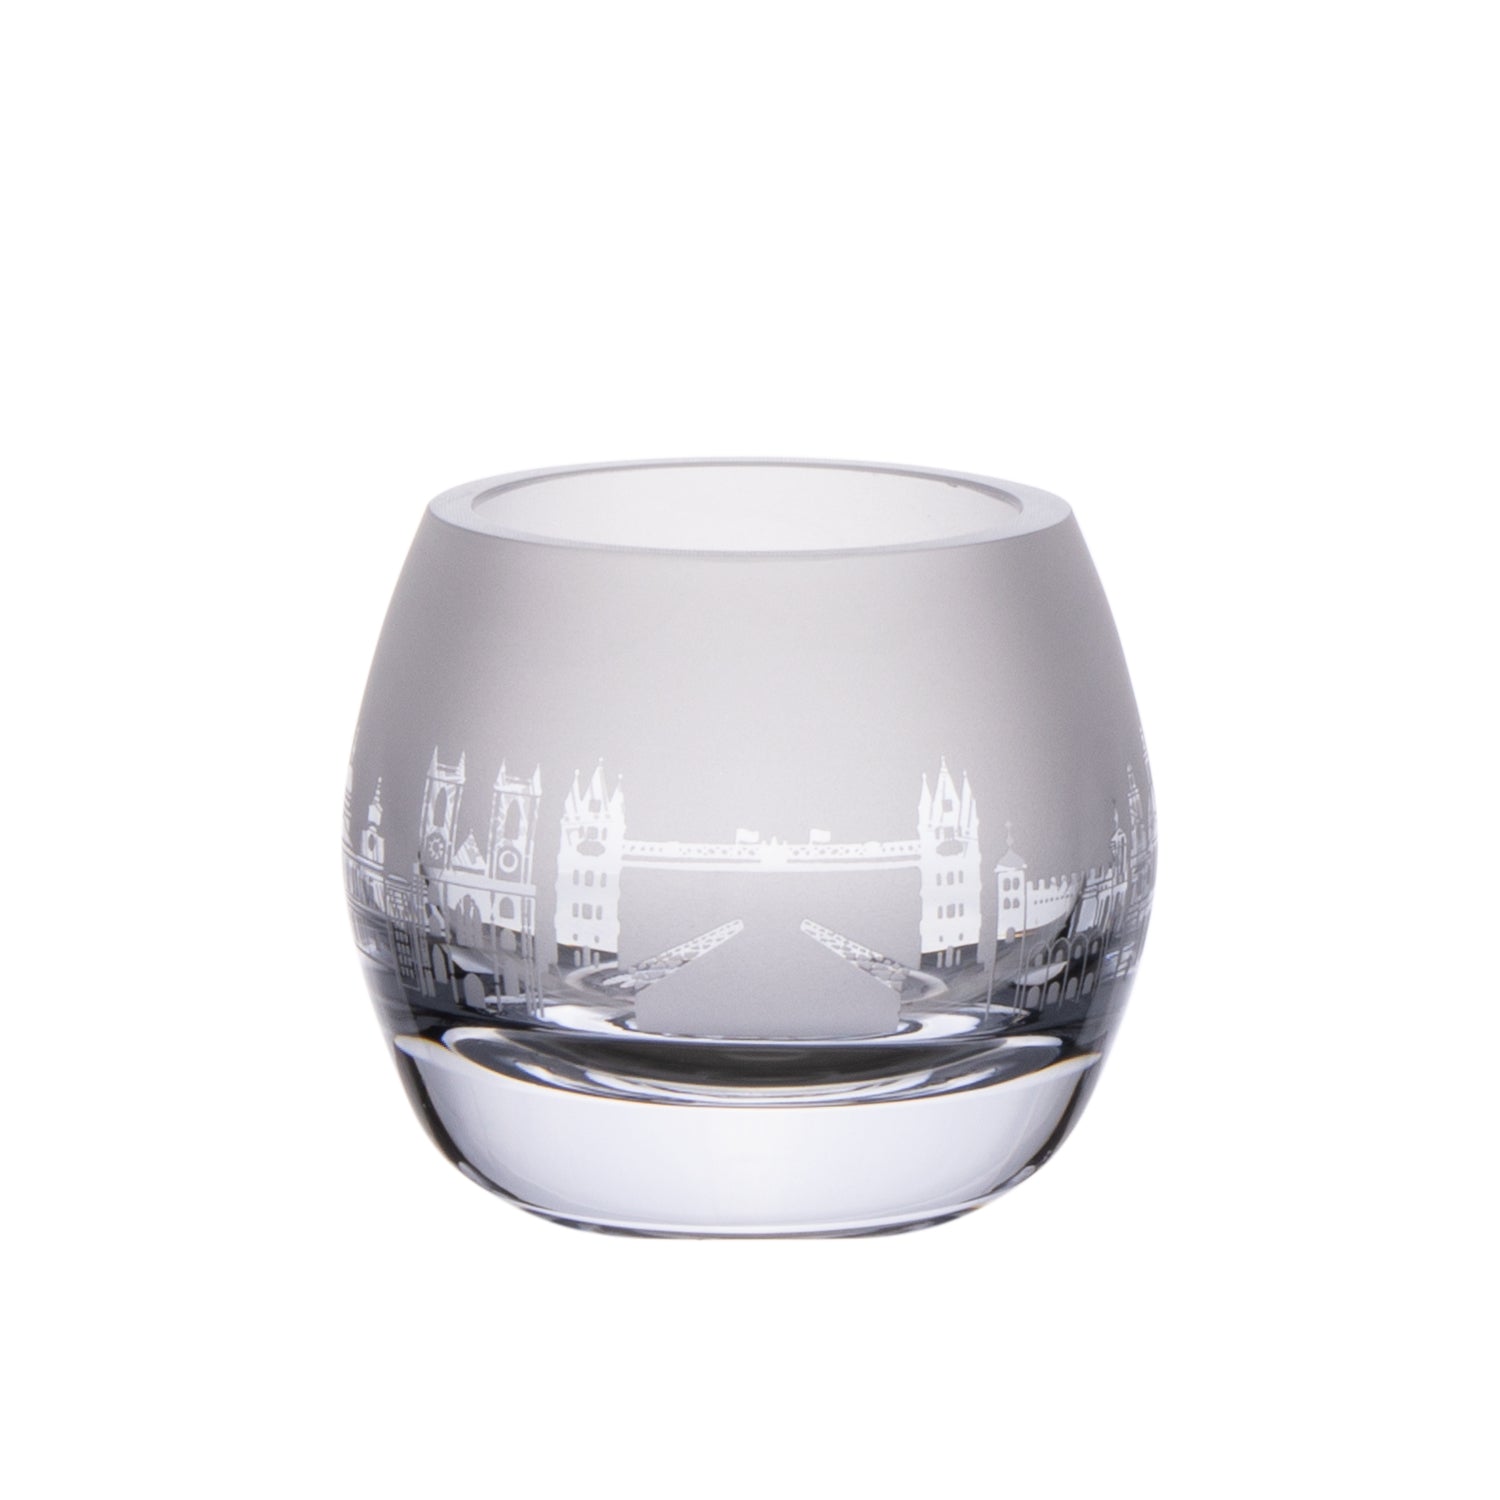 London Tea Light Glass Holder - White 2